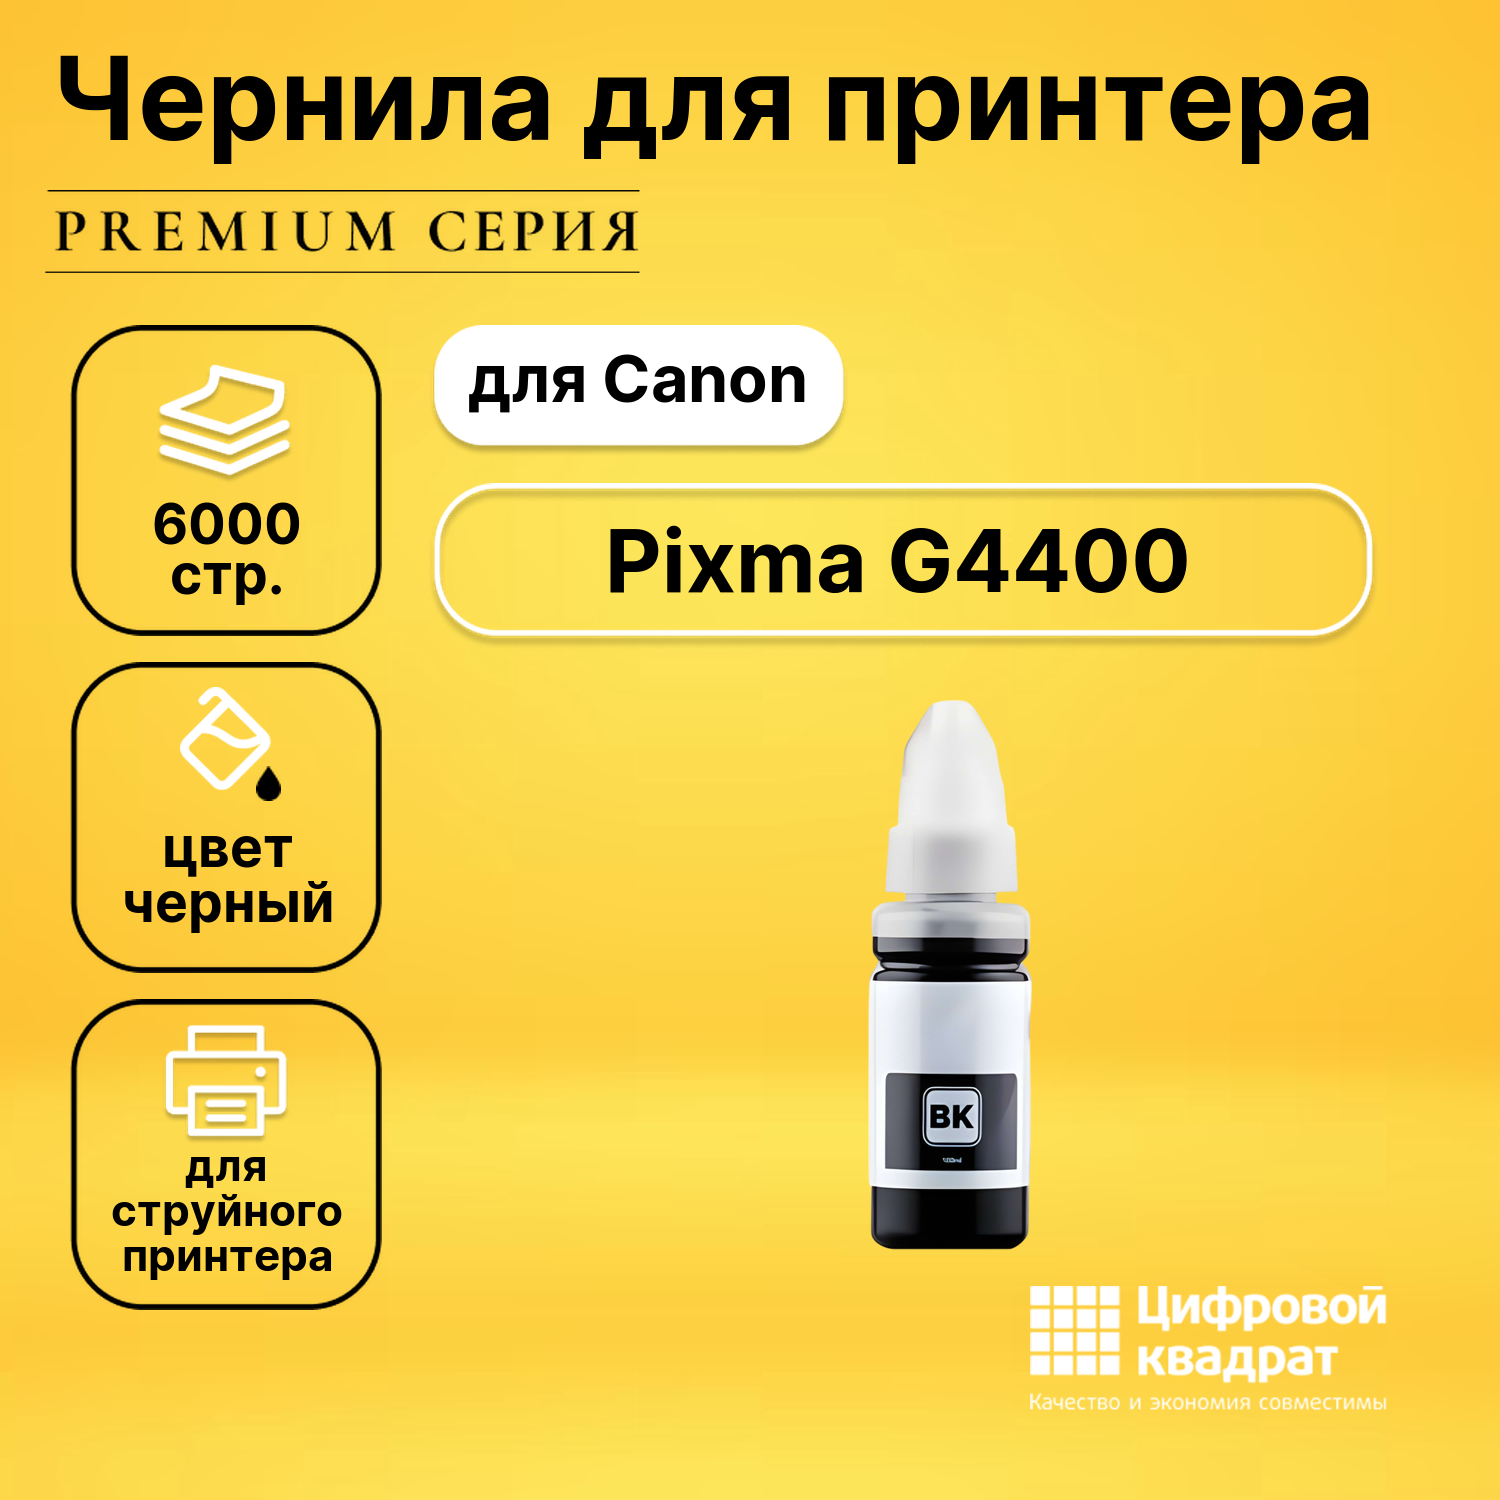 Чернила для Canon Pixma G4400 совместимые